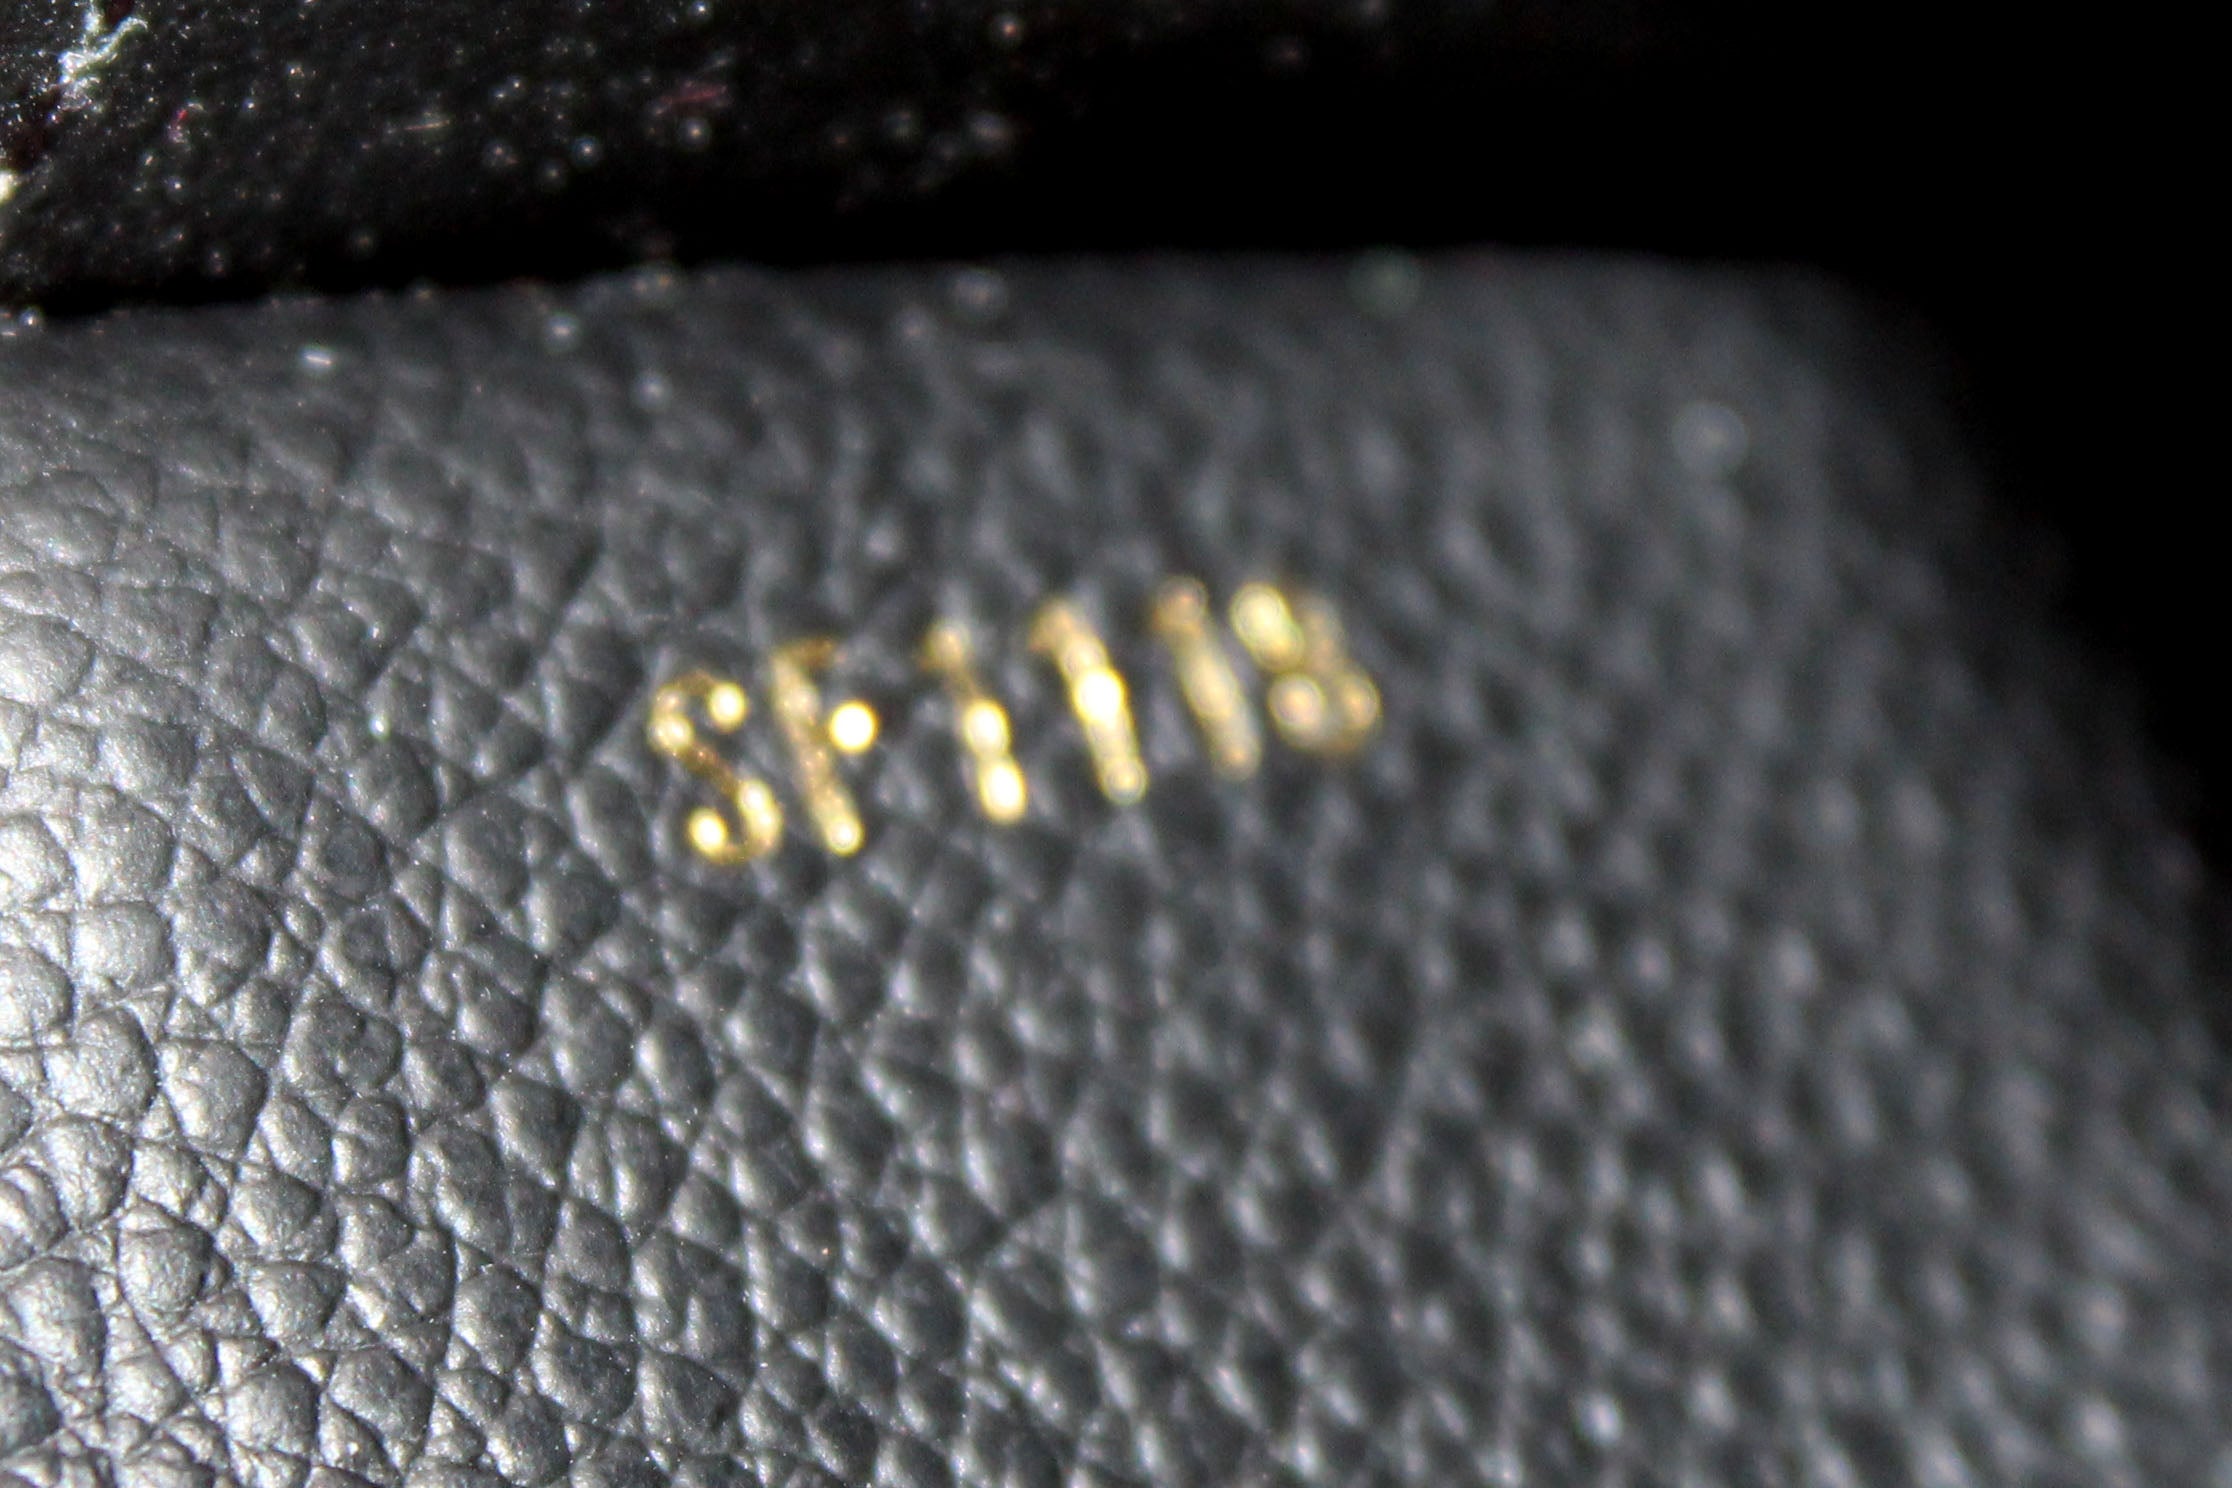 Louis Vuitton Adele Empreinte Mini  Leather, Bottega veneta handbag, Louis  vuitton